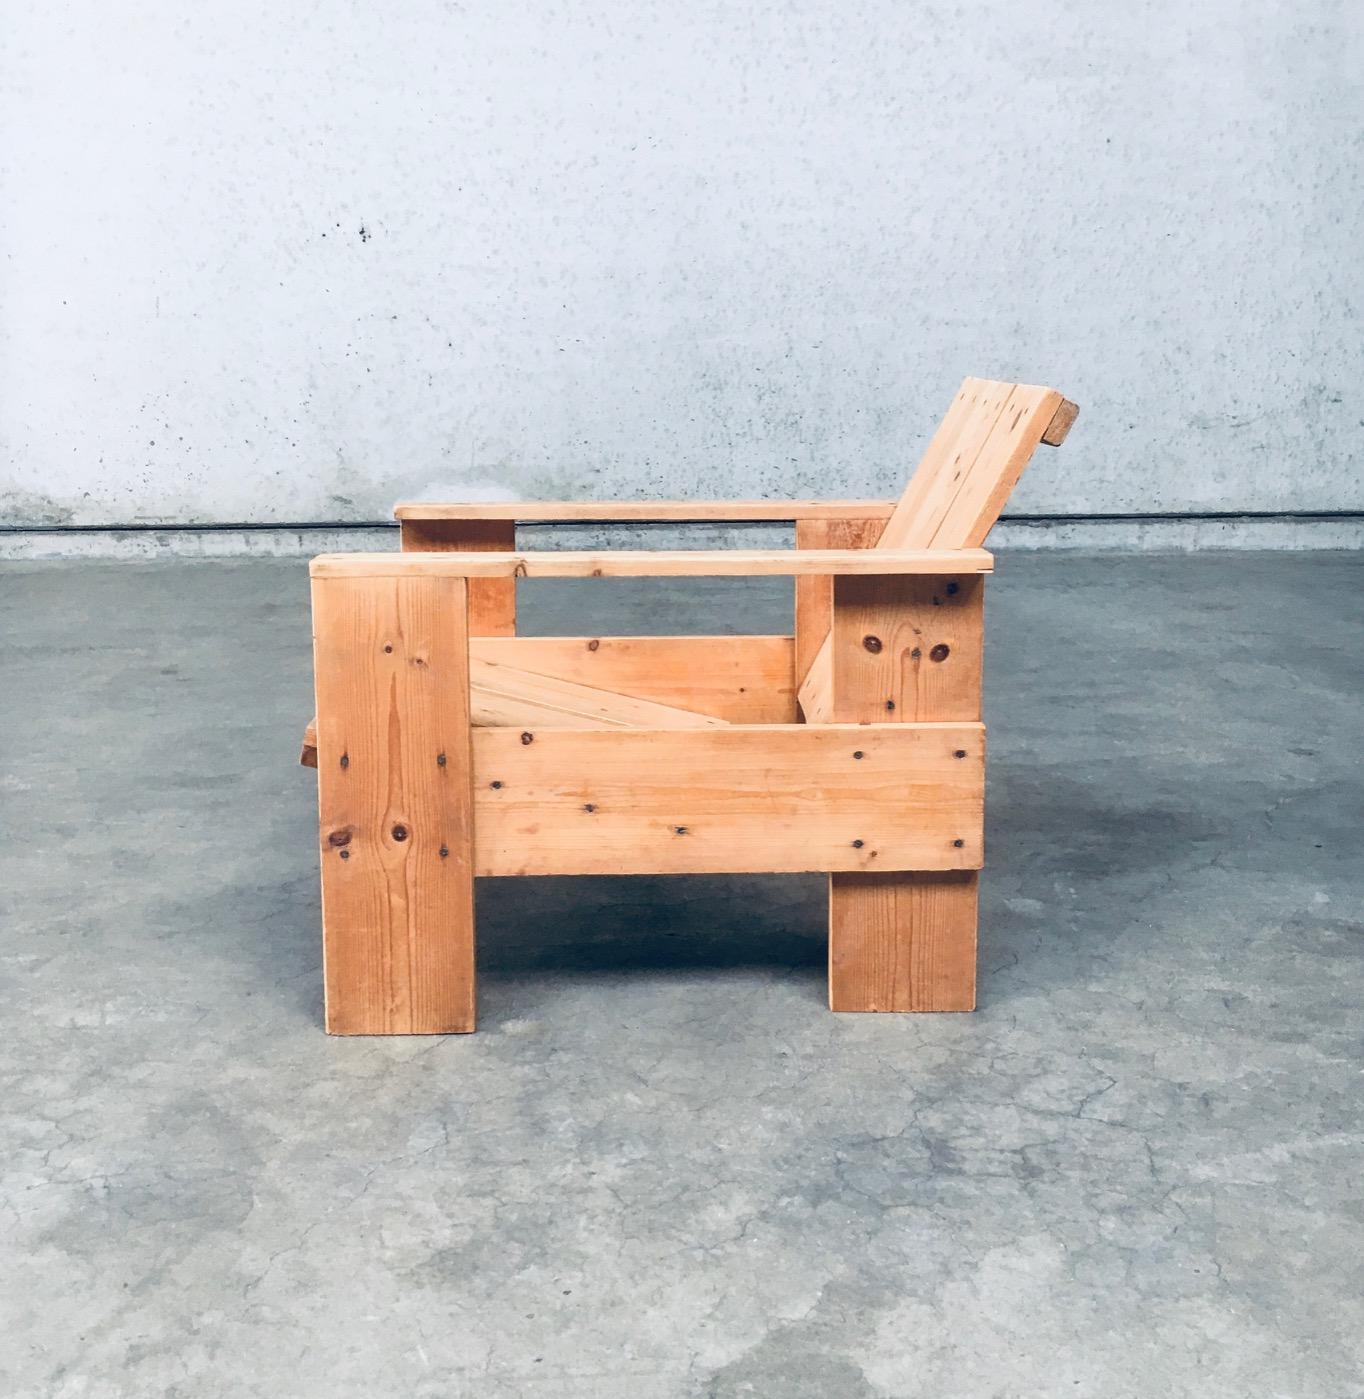 De Stijl Movement Dutch Design Pine CRATE Chair by Gerrit Rietveld For Sale 4